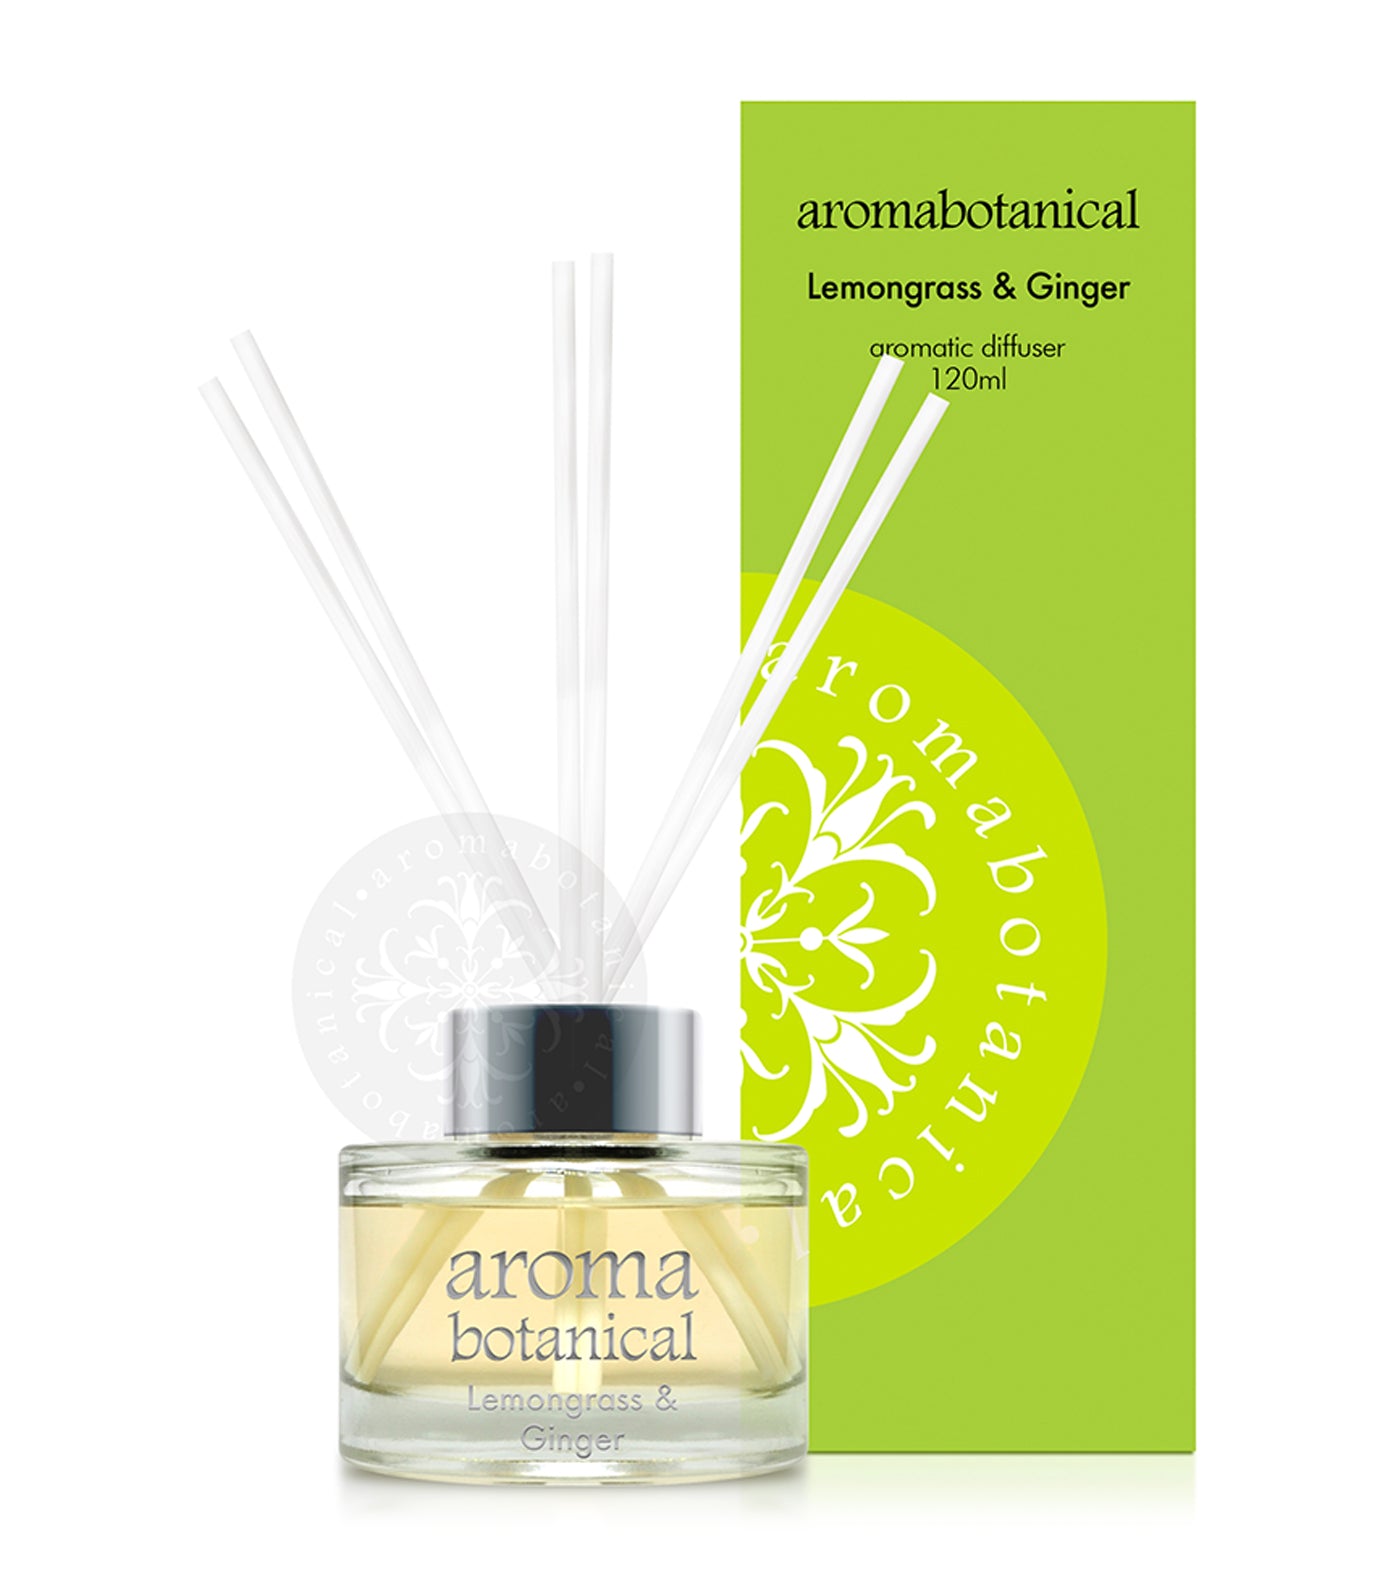 aromabotanical lemongrass & ginger 120ml reed diffuser